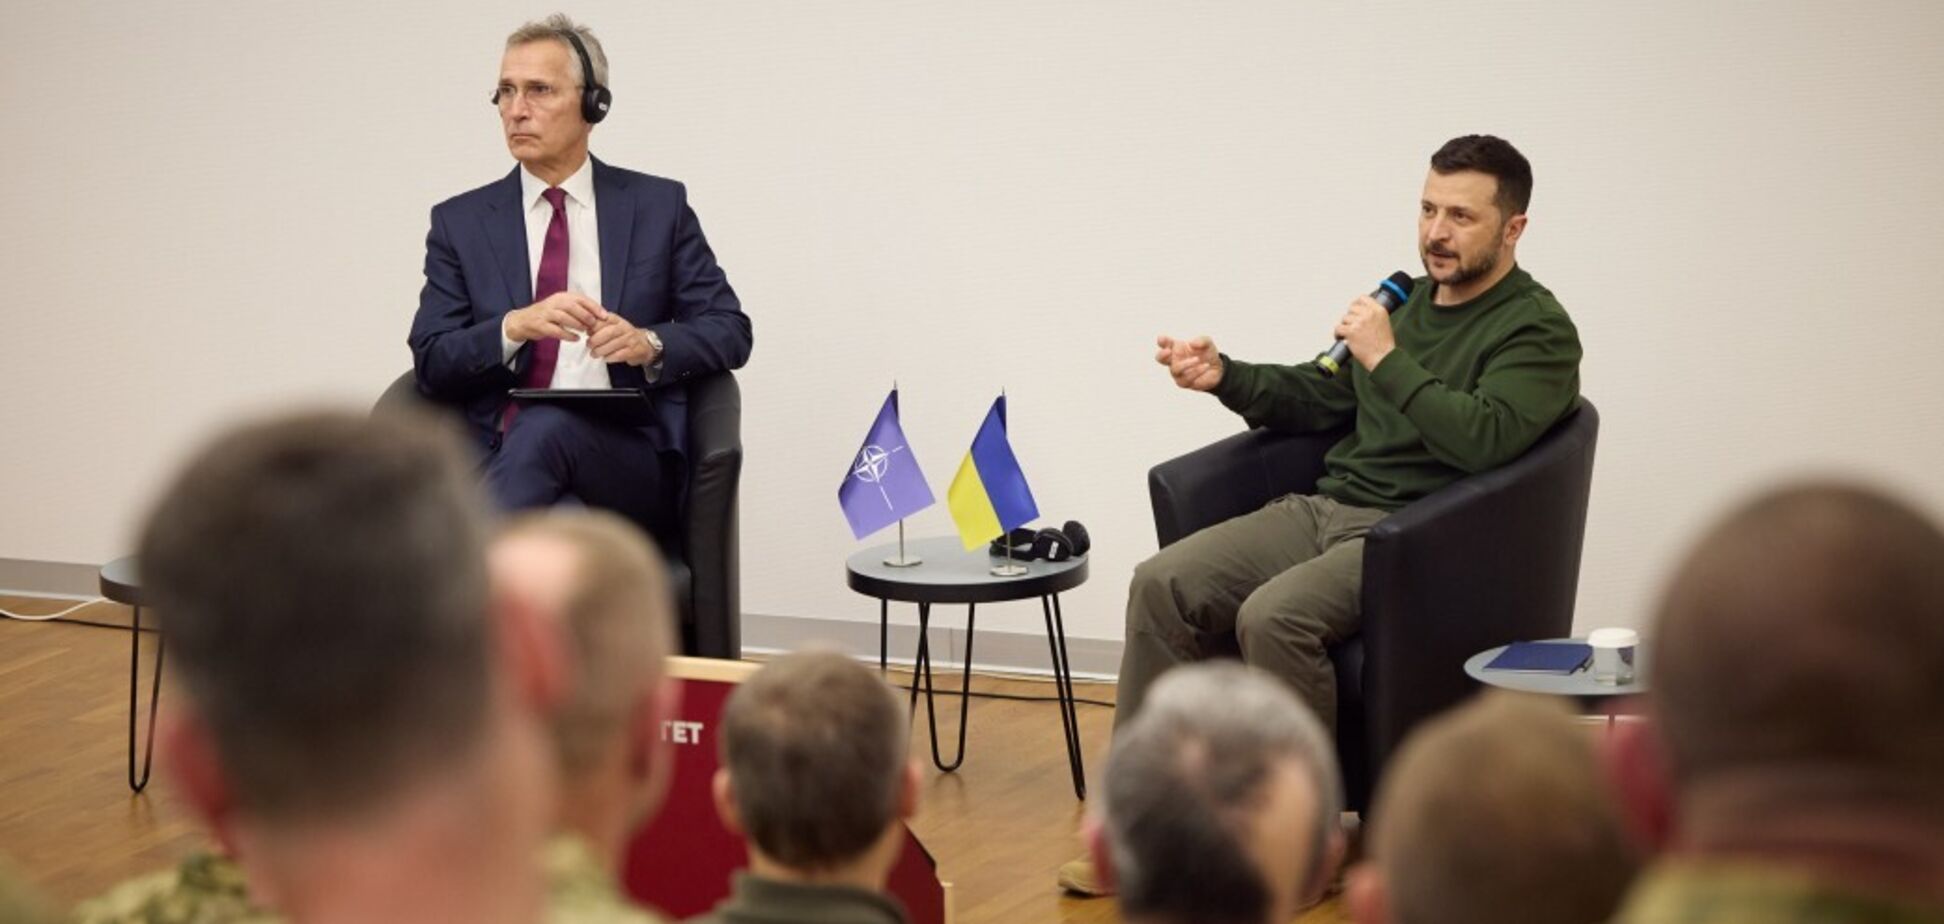 Зеленский и Столтенберг встретились с офицерами, проходящими курсы военного образования по стандартам НАТО. Видео